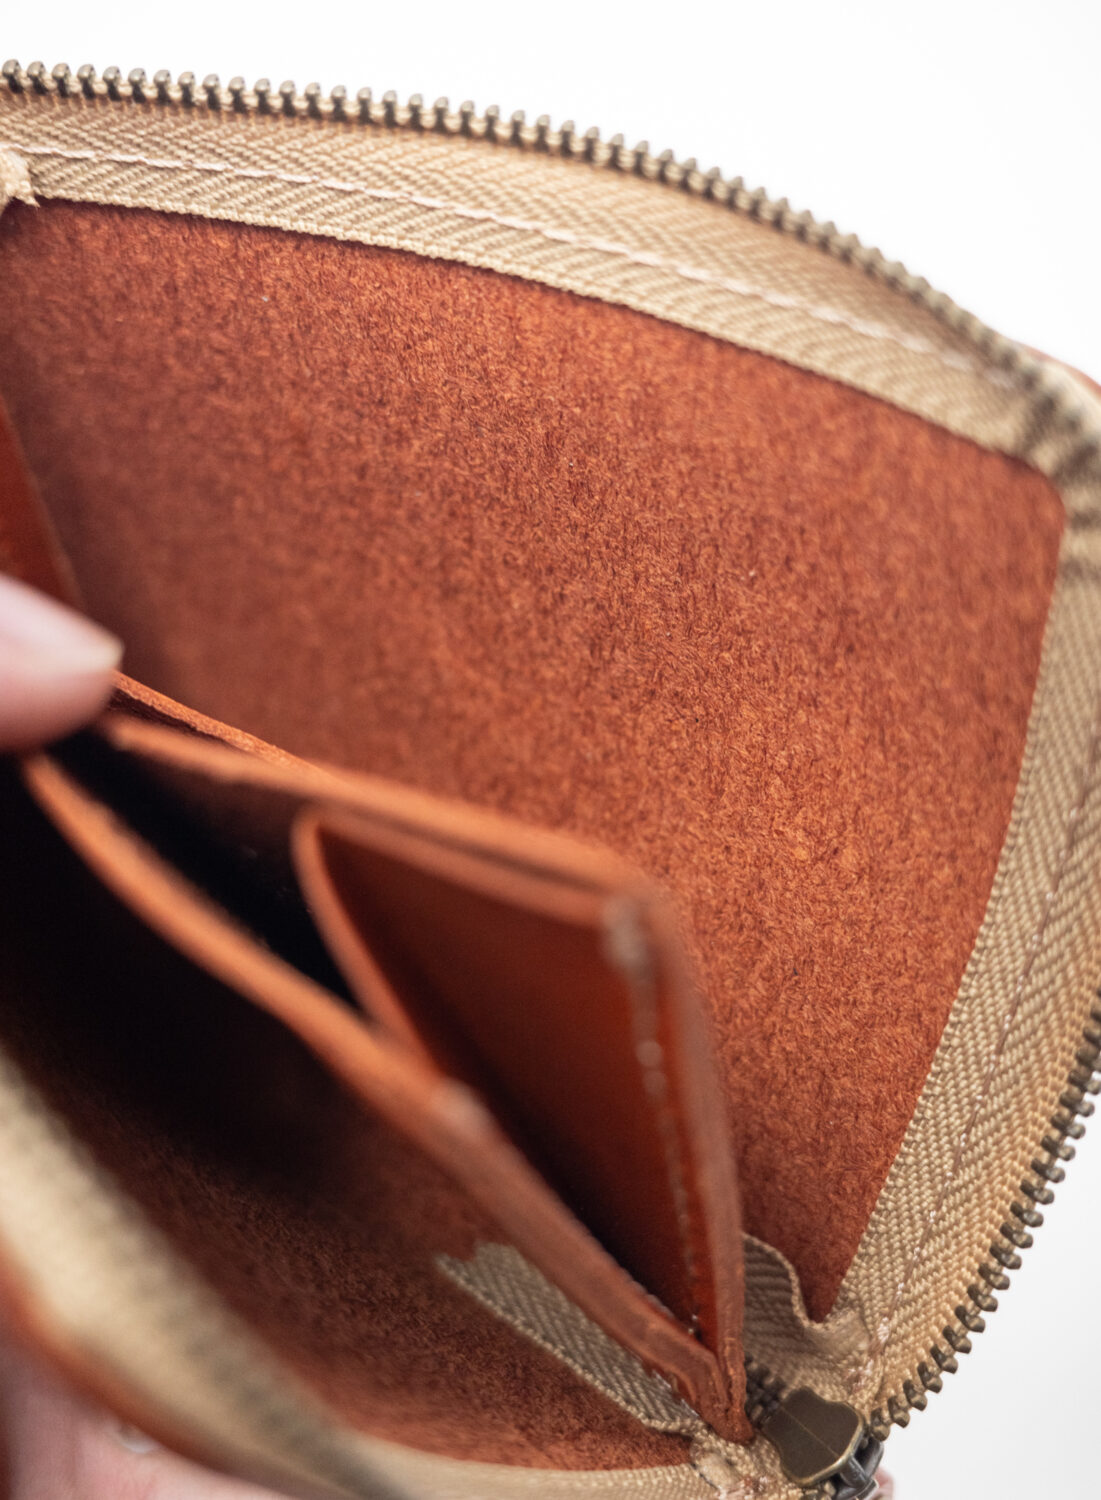 ネイティブ クリエイションのL字ファスナー薄型ミニ財布の裏地は革のくずが落ちやすい